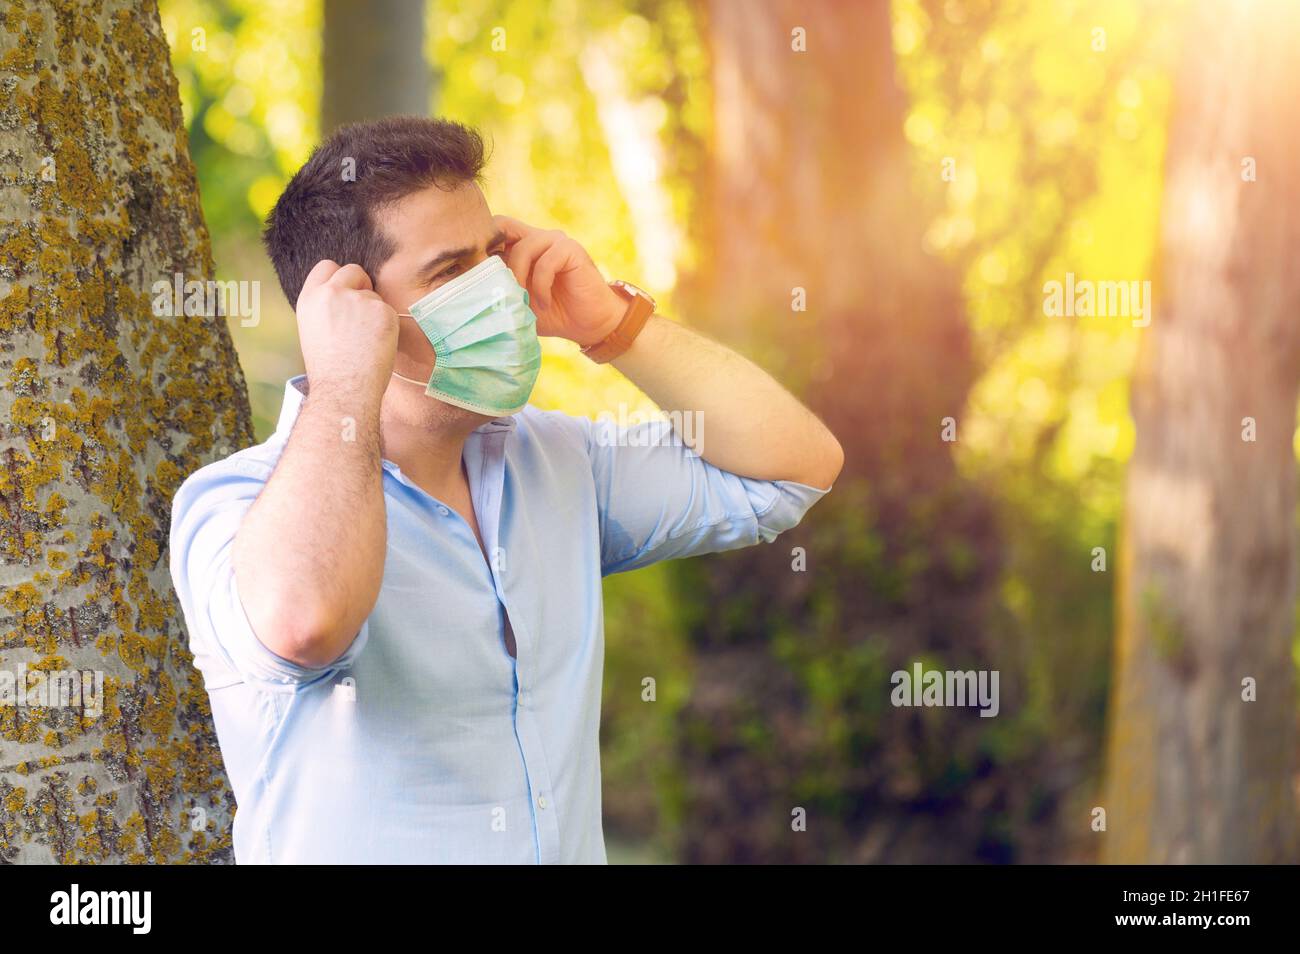 Junger Mann, der im Park steht, entfernt eine schützende Gesichtsmaske und feiert den Sieg über das Coronavirus draußen unter freiem Himmel. Ende der Quarantäne. Maske entfernen. Stockfoto